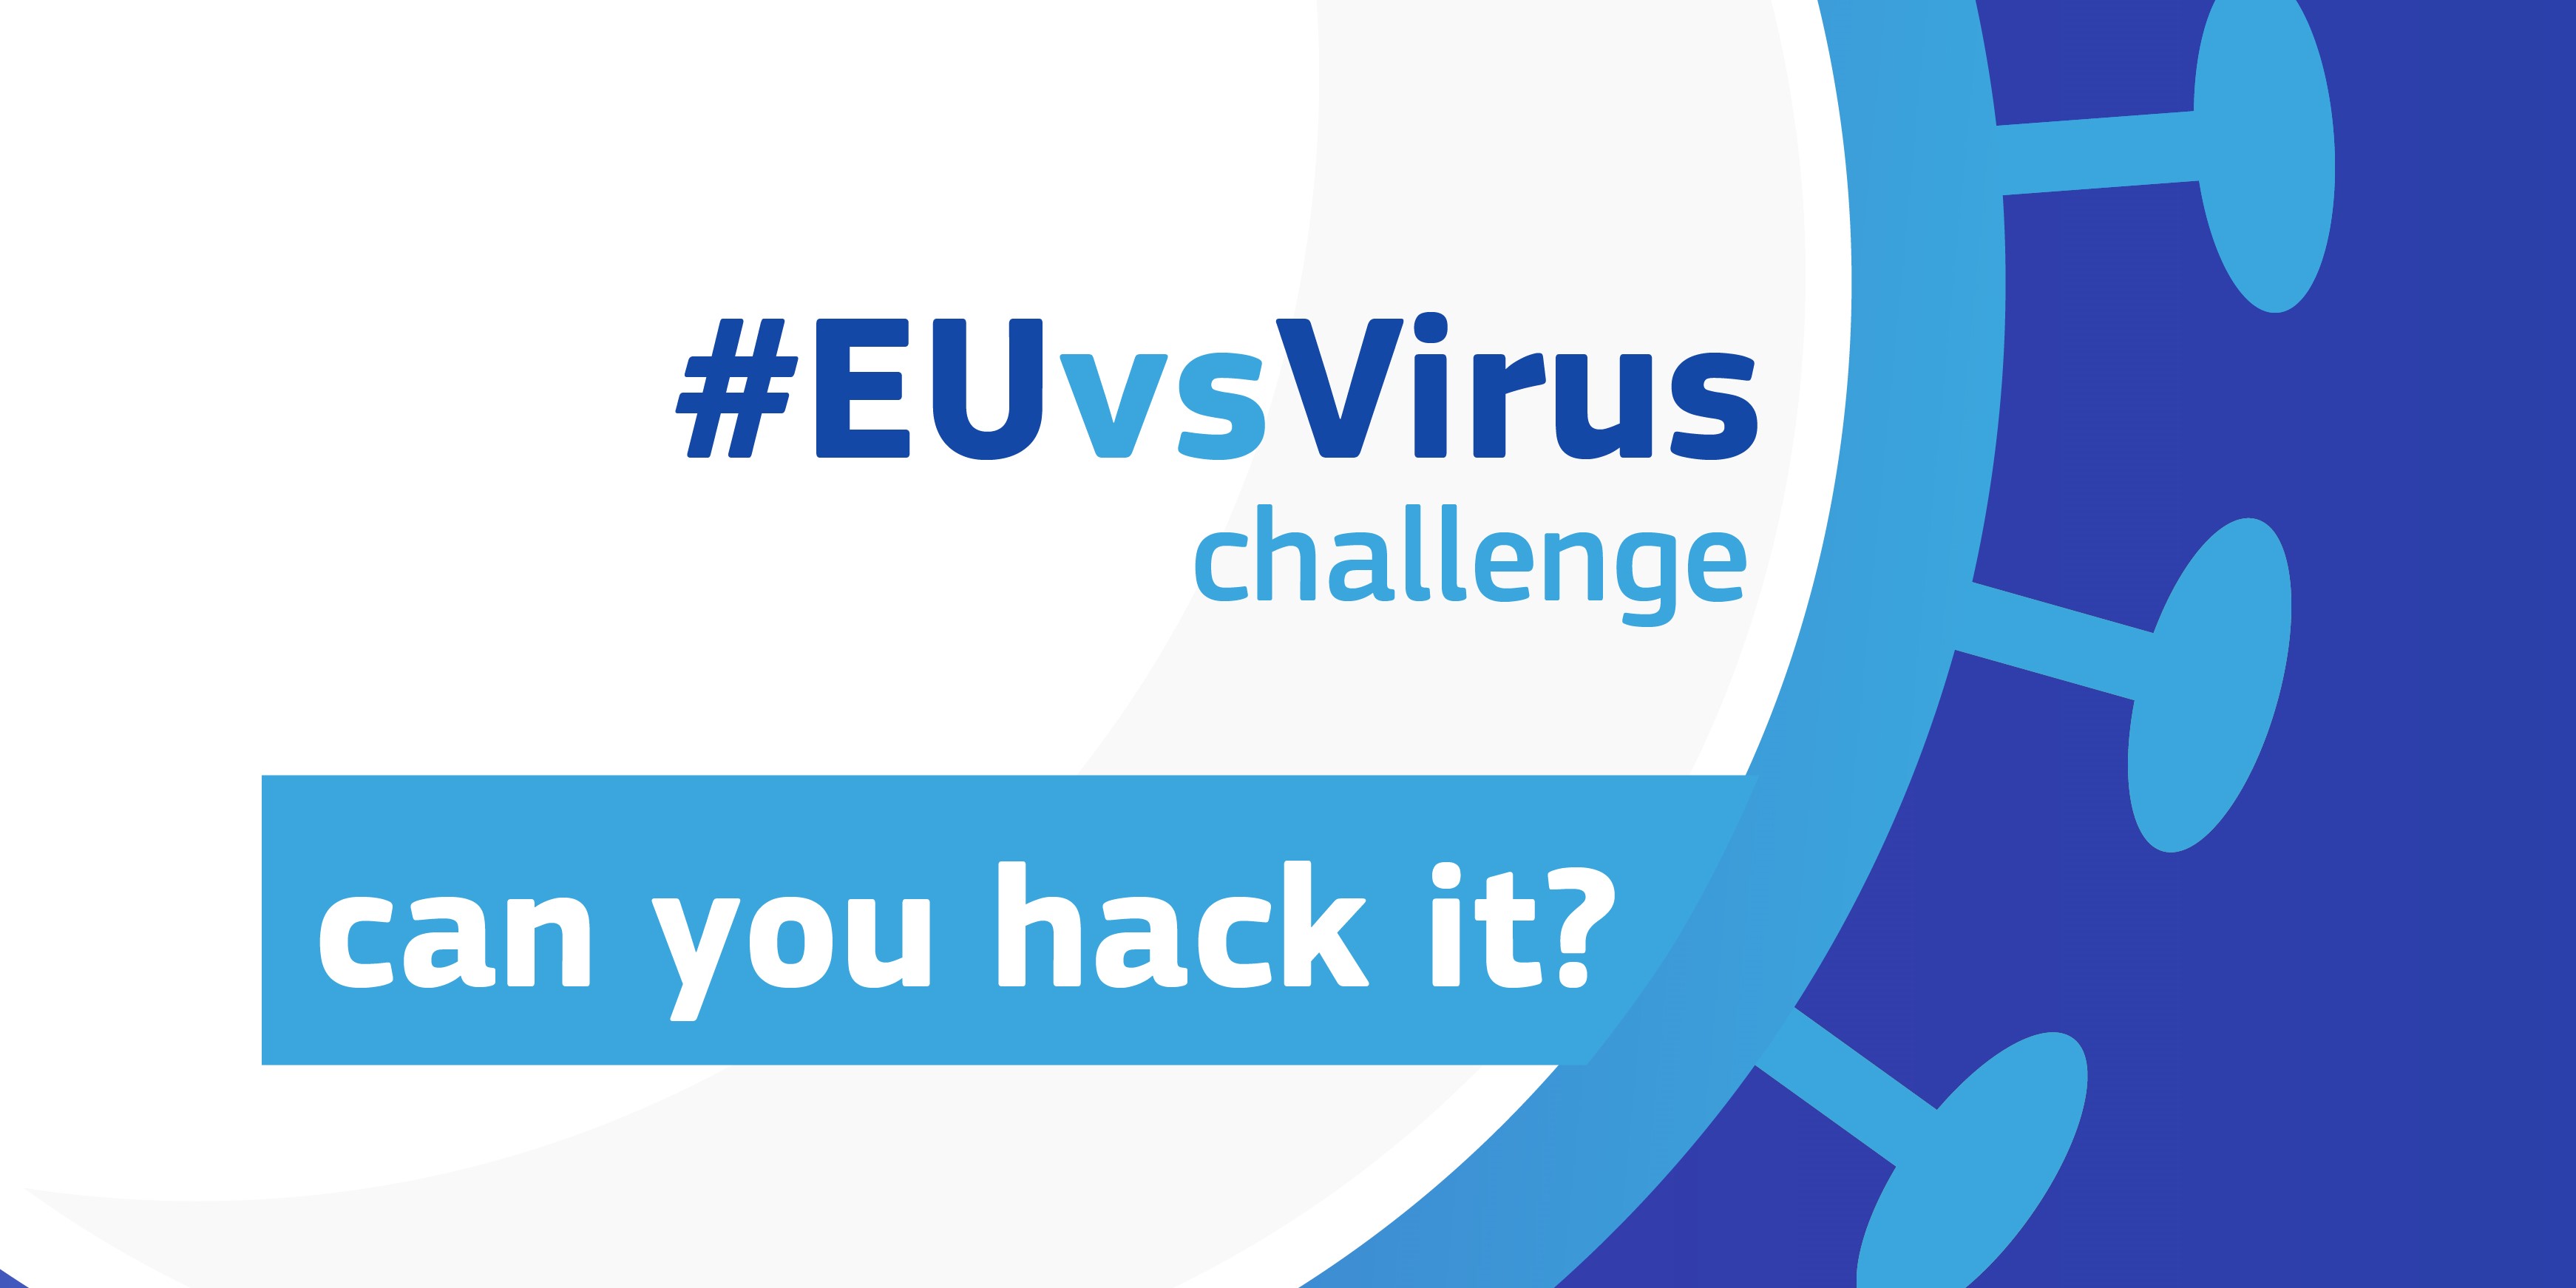 (c) Euvsvirus.org